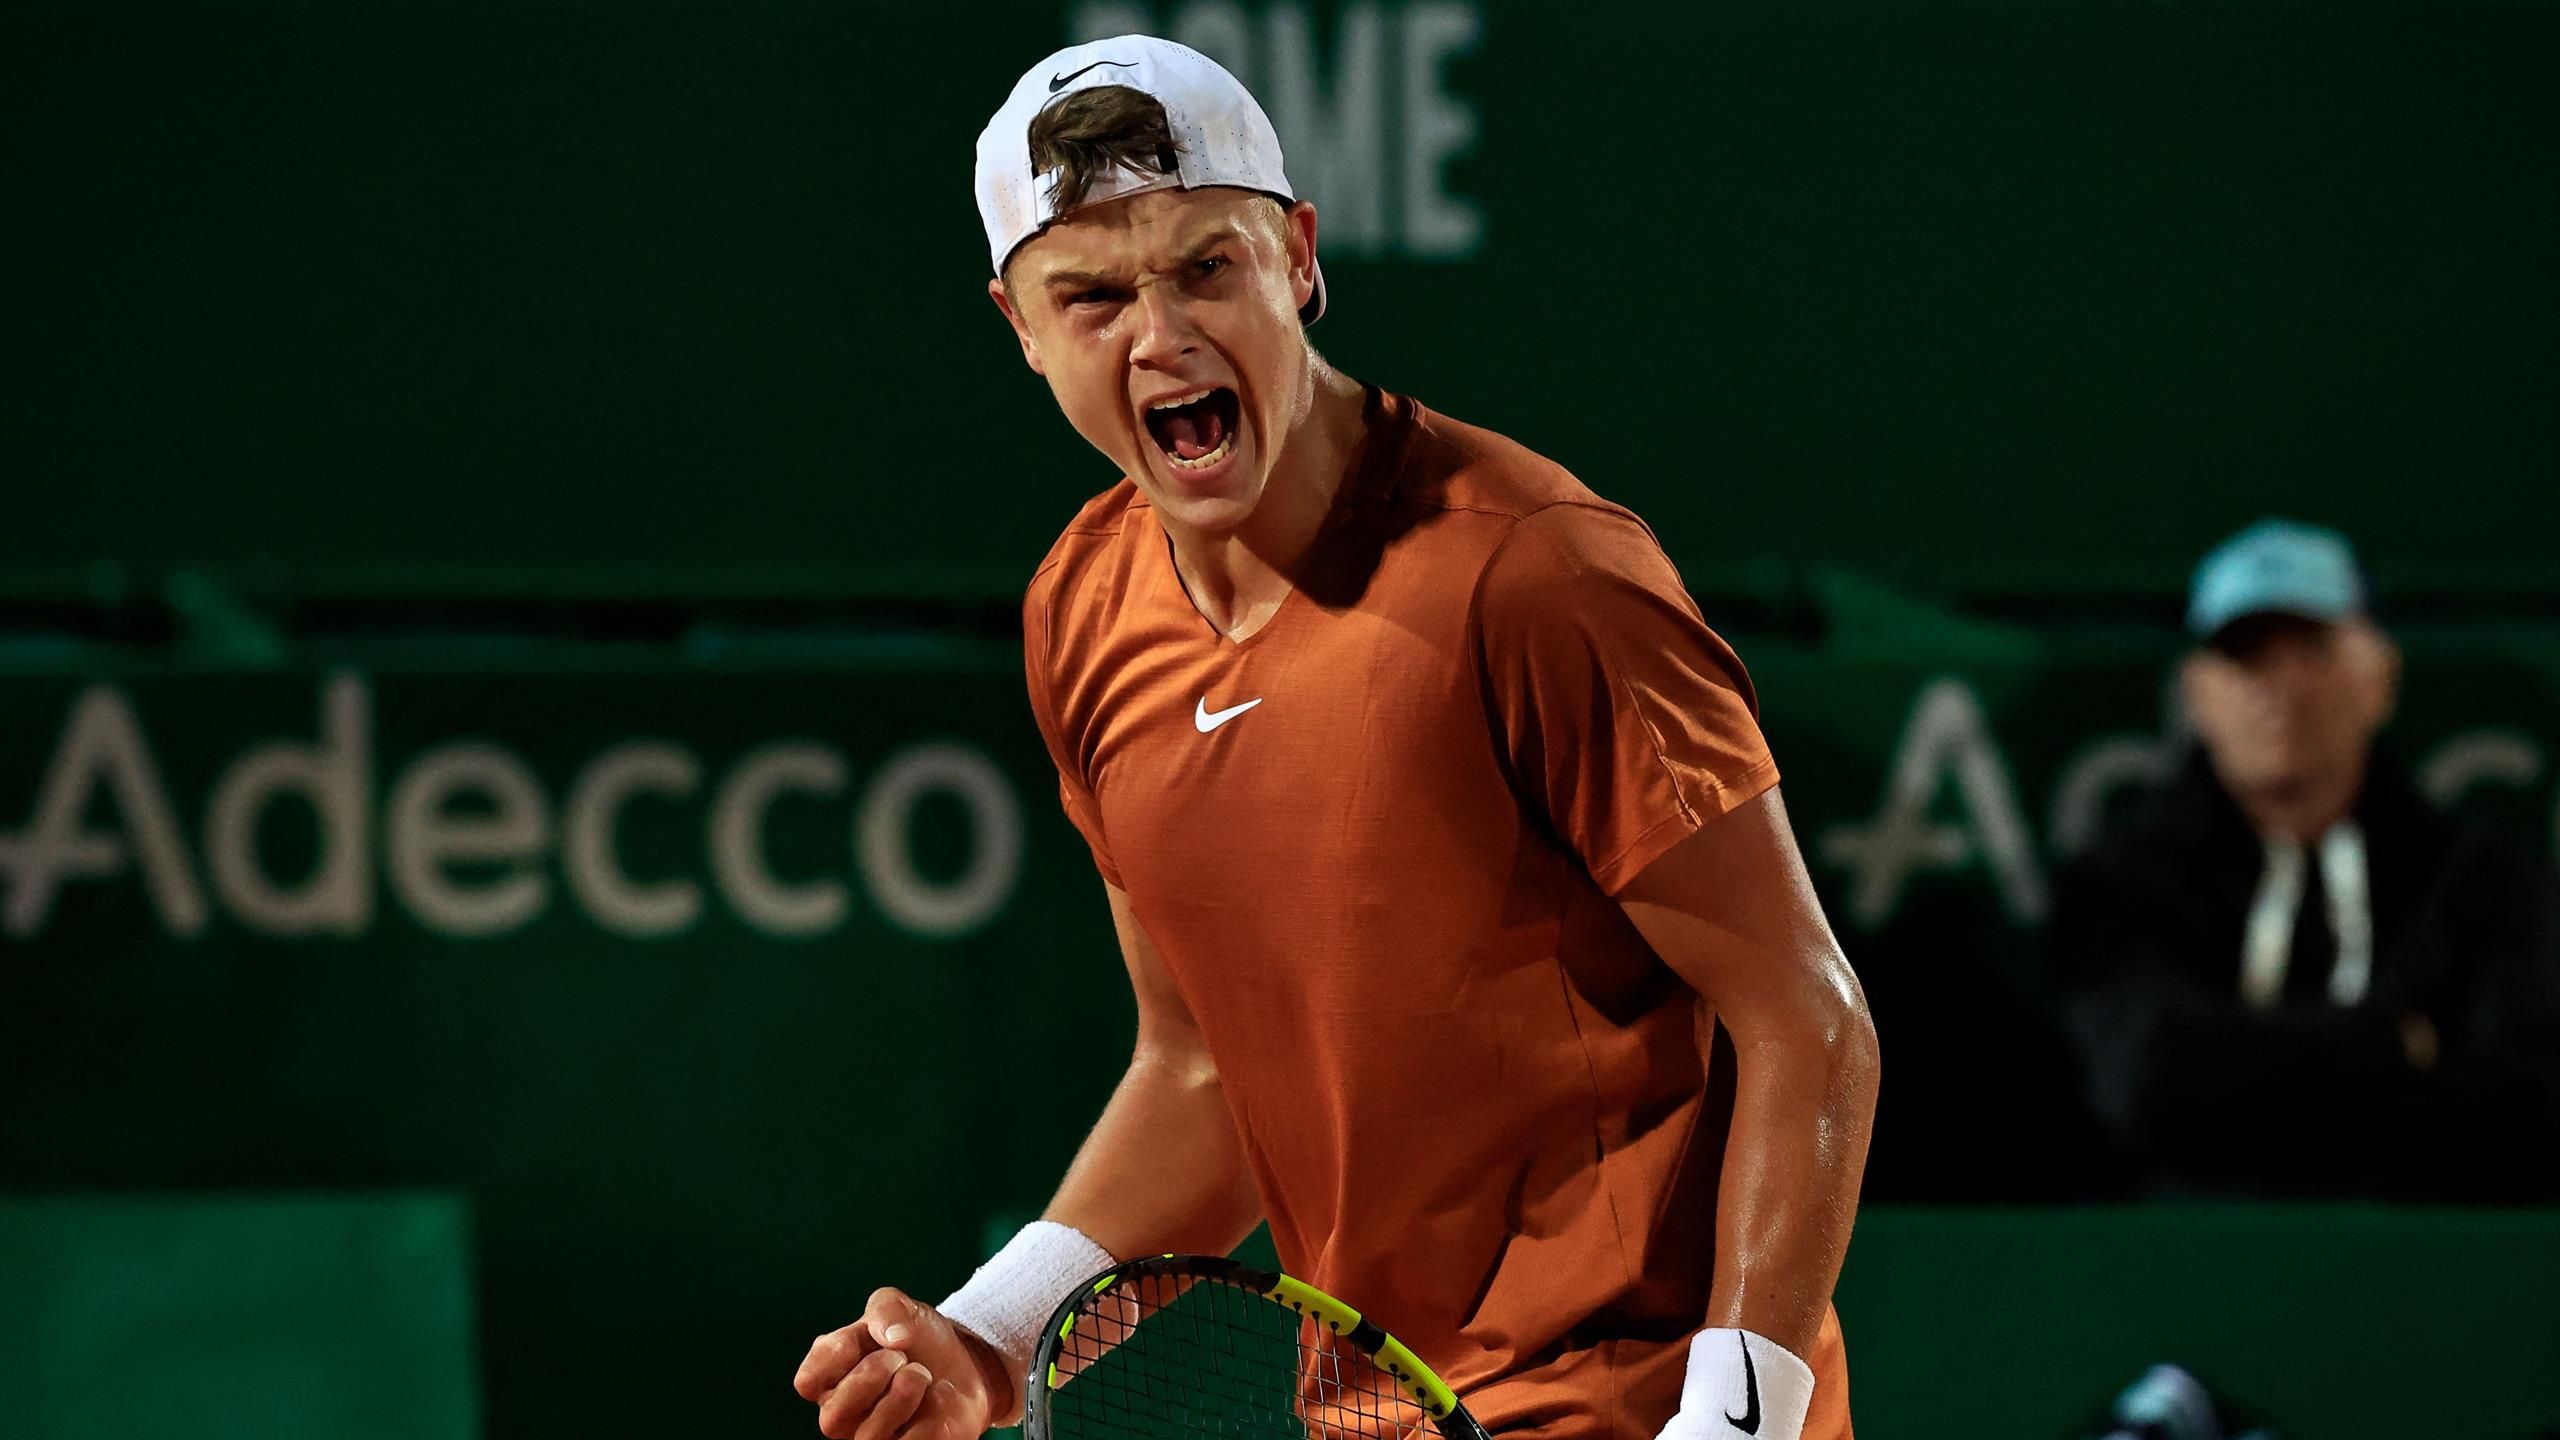 ATP Masters Monte-Carlo Holger Rune triumphiert im Youngster-Duell mit Jannik Sinner - die Highlights - Tennis Video